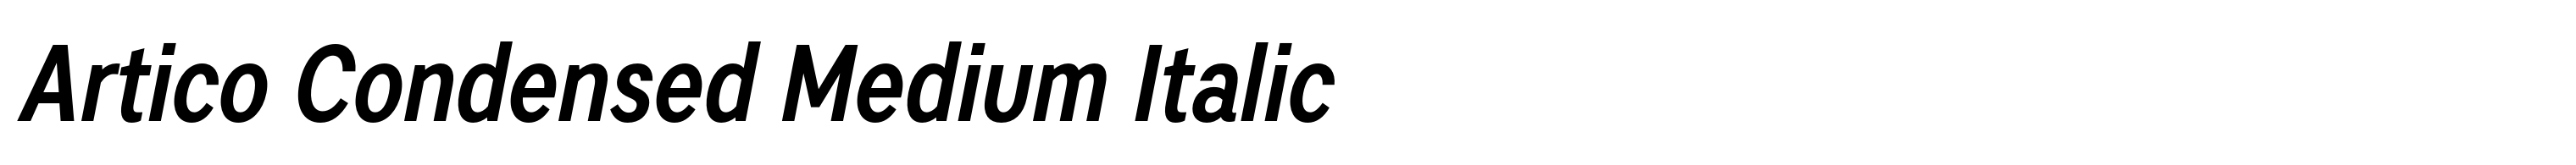 Artico Condensed Medium Italic